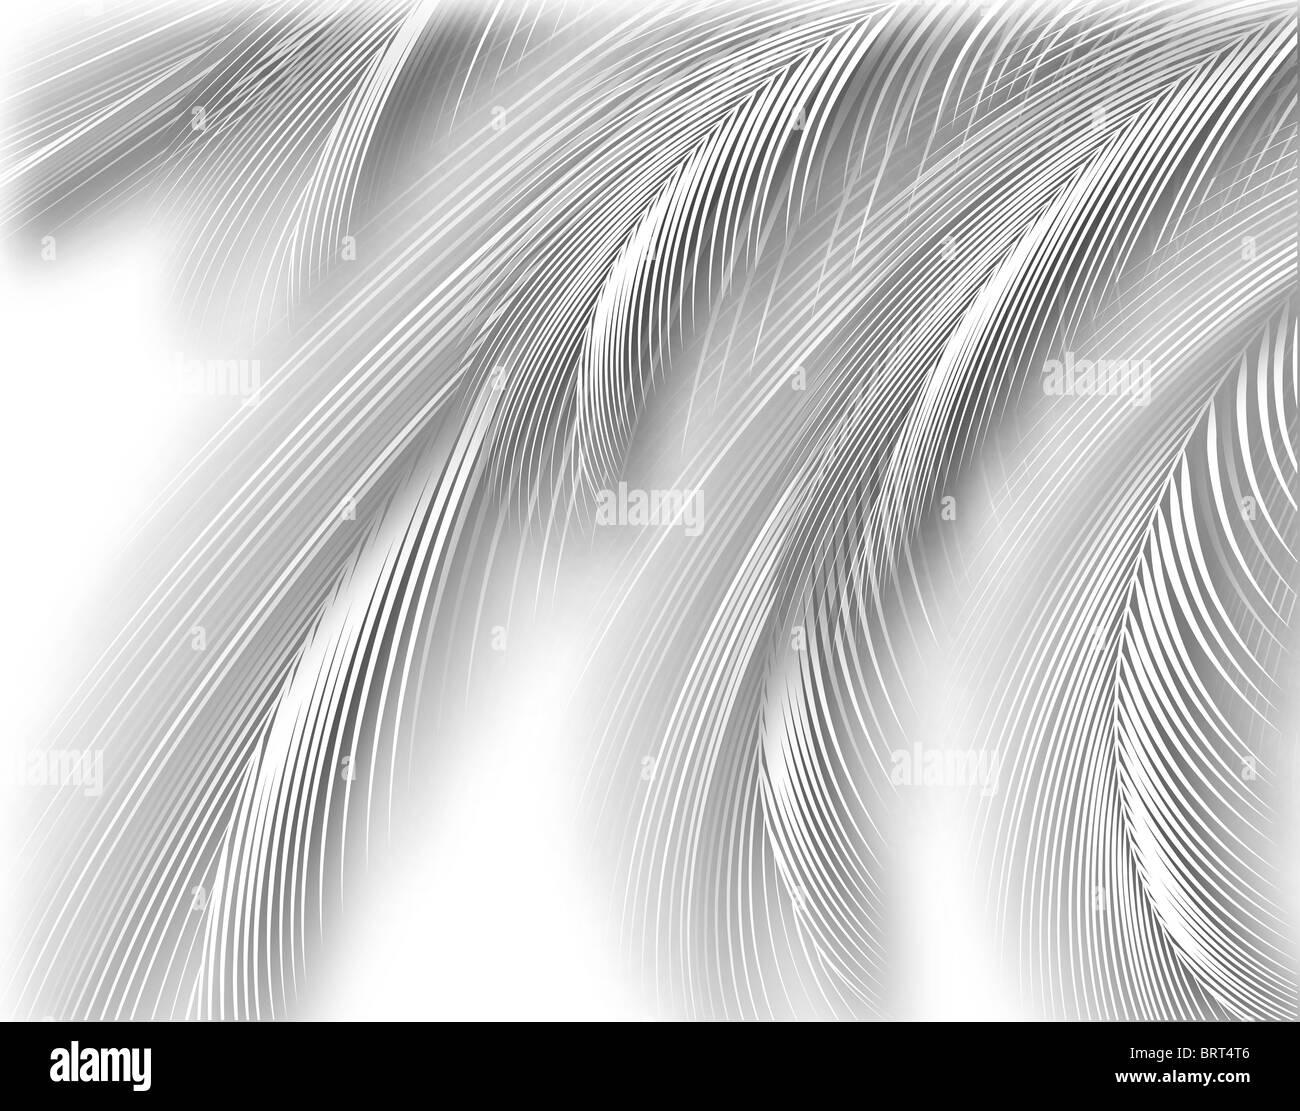 Abstract illustrazione di esclusione delle belle feathery fronde Foto Stock